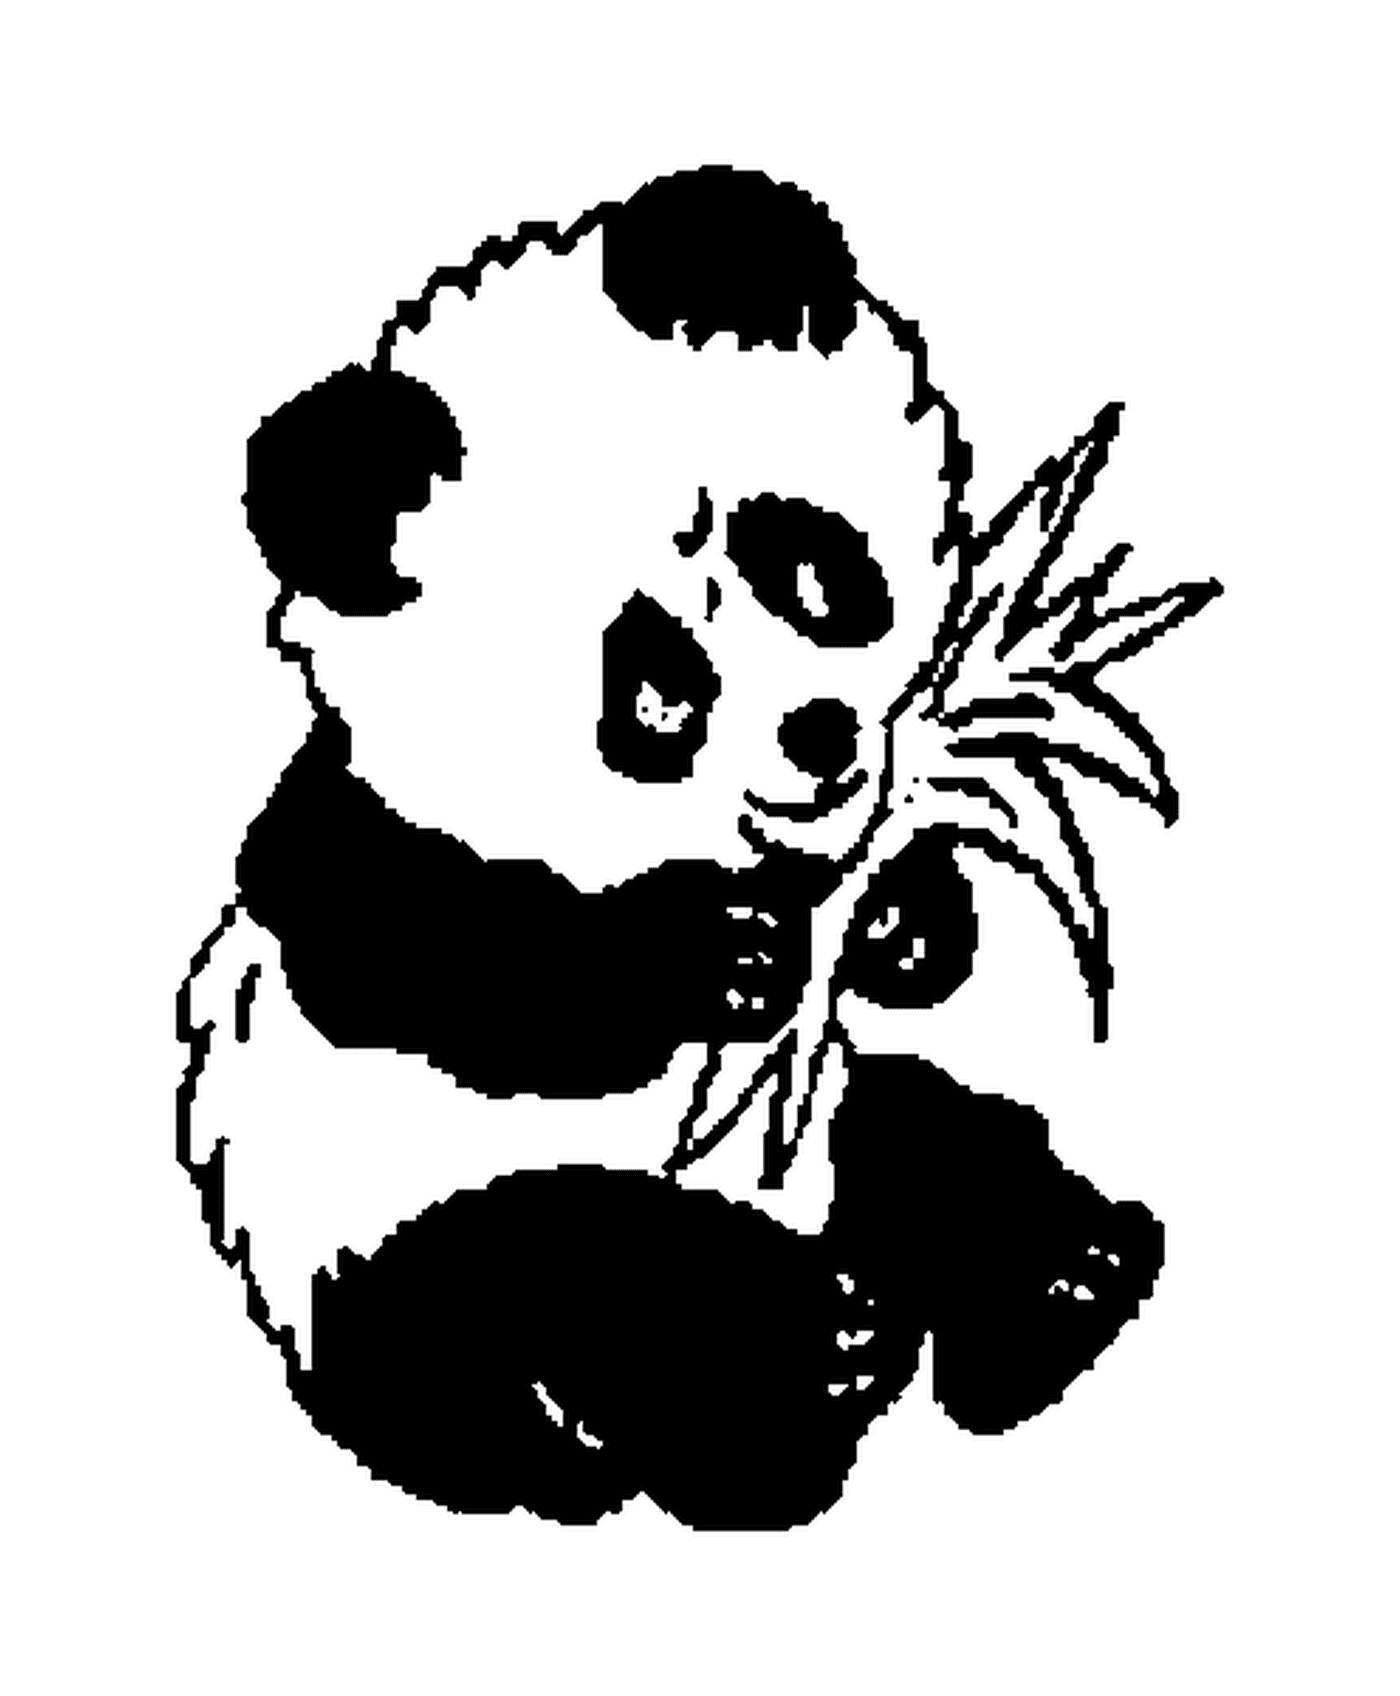  Панда сидит и ест листья 